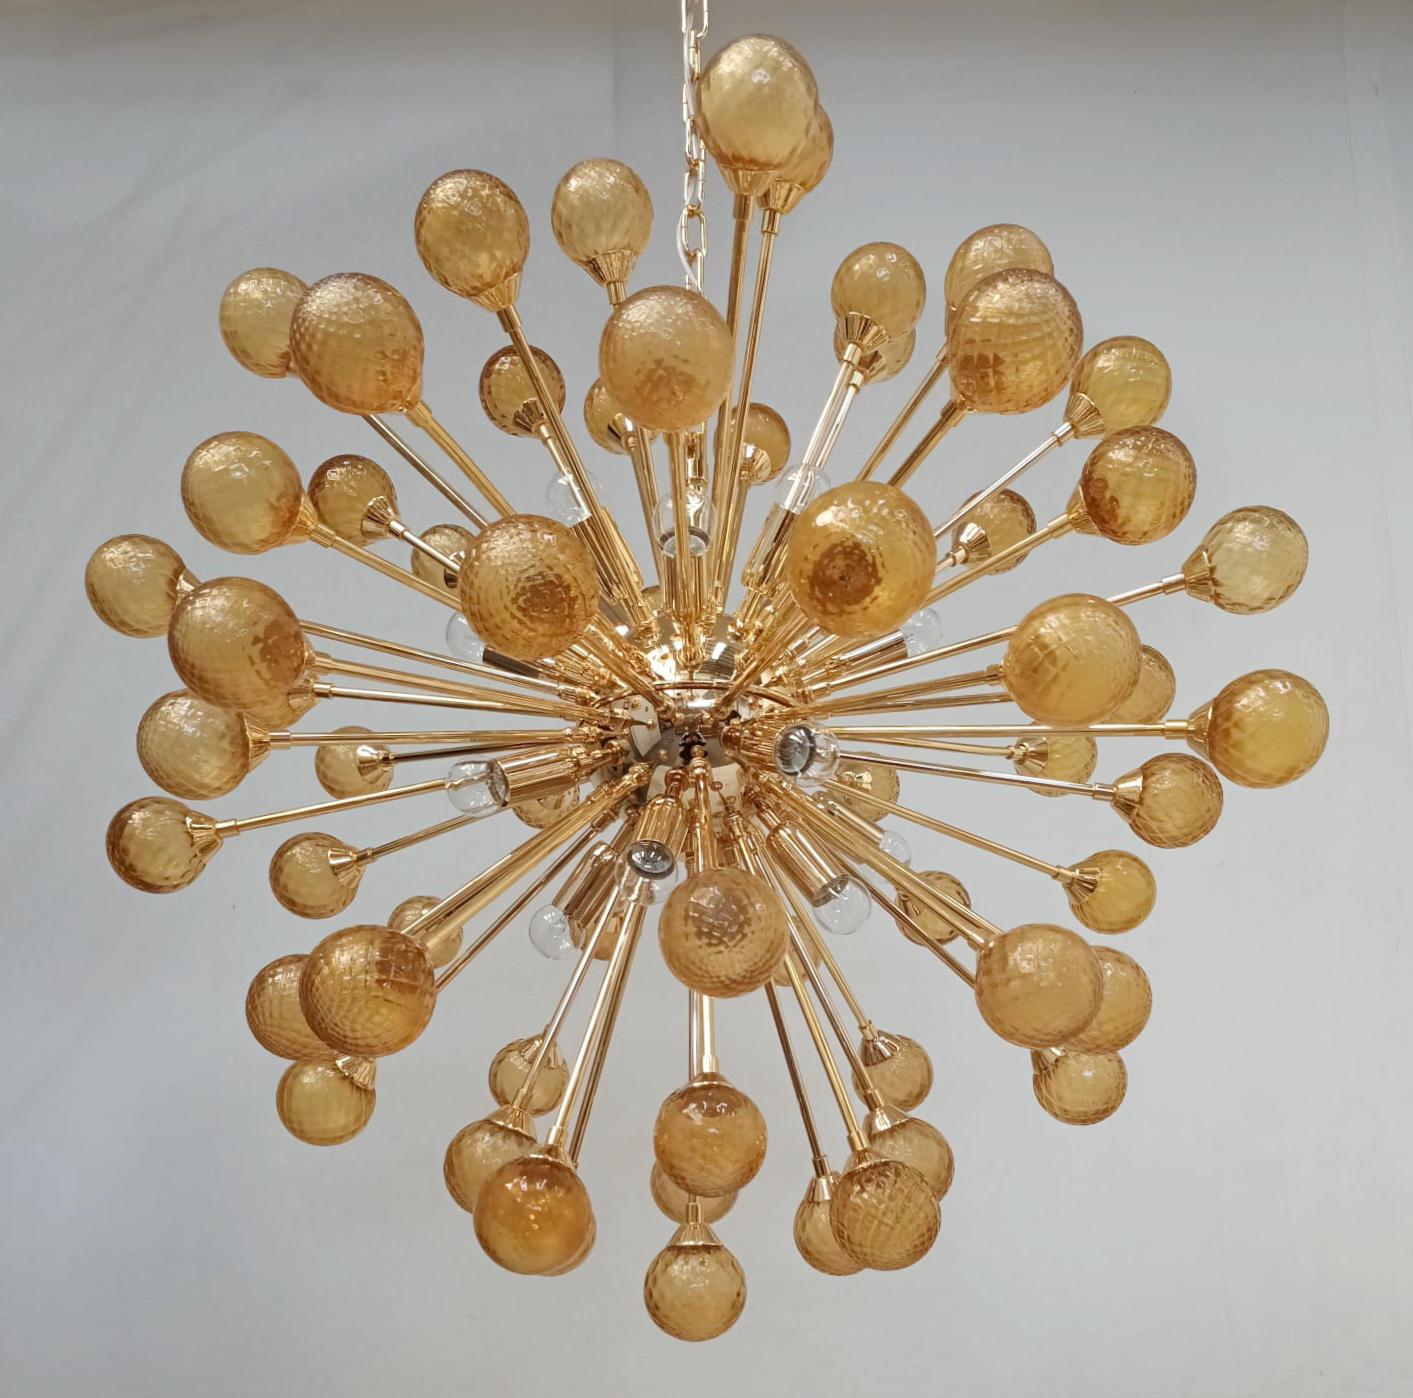 Lustre Sputnik moderne italien avec des sphères en verre de Murano texturées et soufflées à la main, montées sur une monture en métal doré / Fabriqué en Italie
16 lampes / type E12 ou E14 / max 40W 
Dimensions : diamètre 31,5 pouces, hauteur 31,5